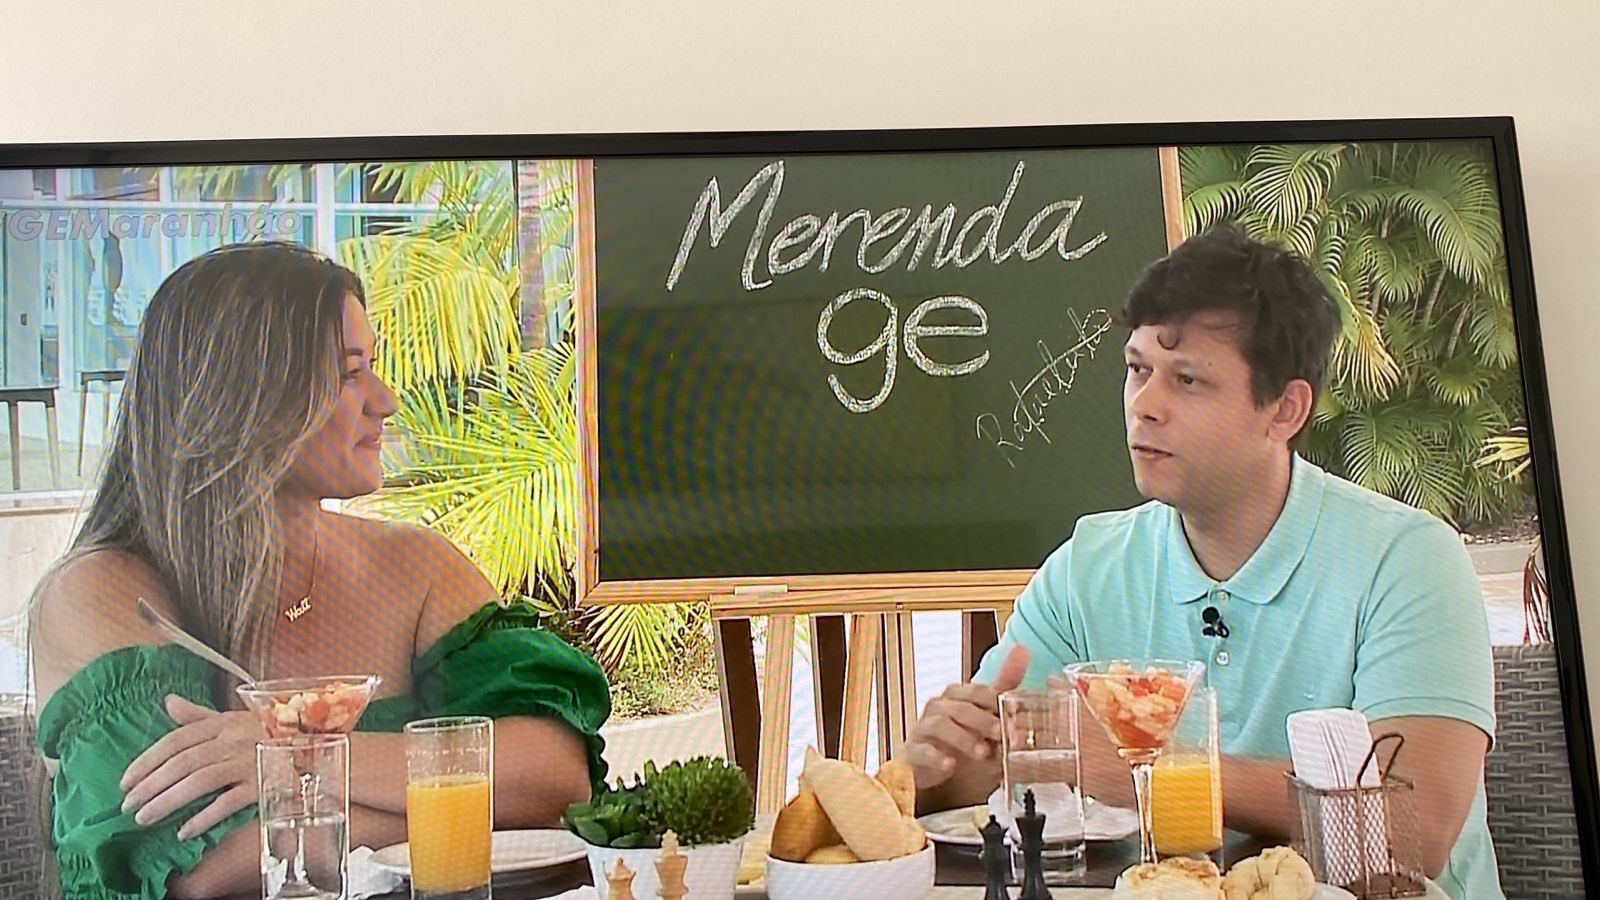 Rafael Leitão on X: Hoje saiu a primeira parte de uma longa entrevista  para o Globo Esporte Maranhão. Quando tiver o link para a a matéria, passo  por aqui. Fiquei surpreso em